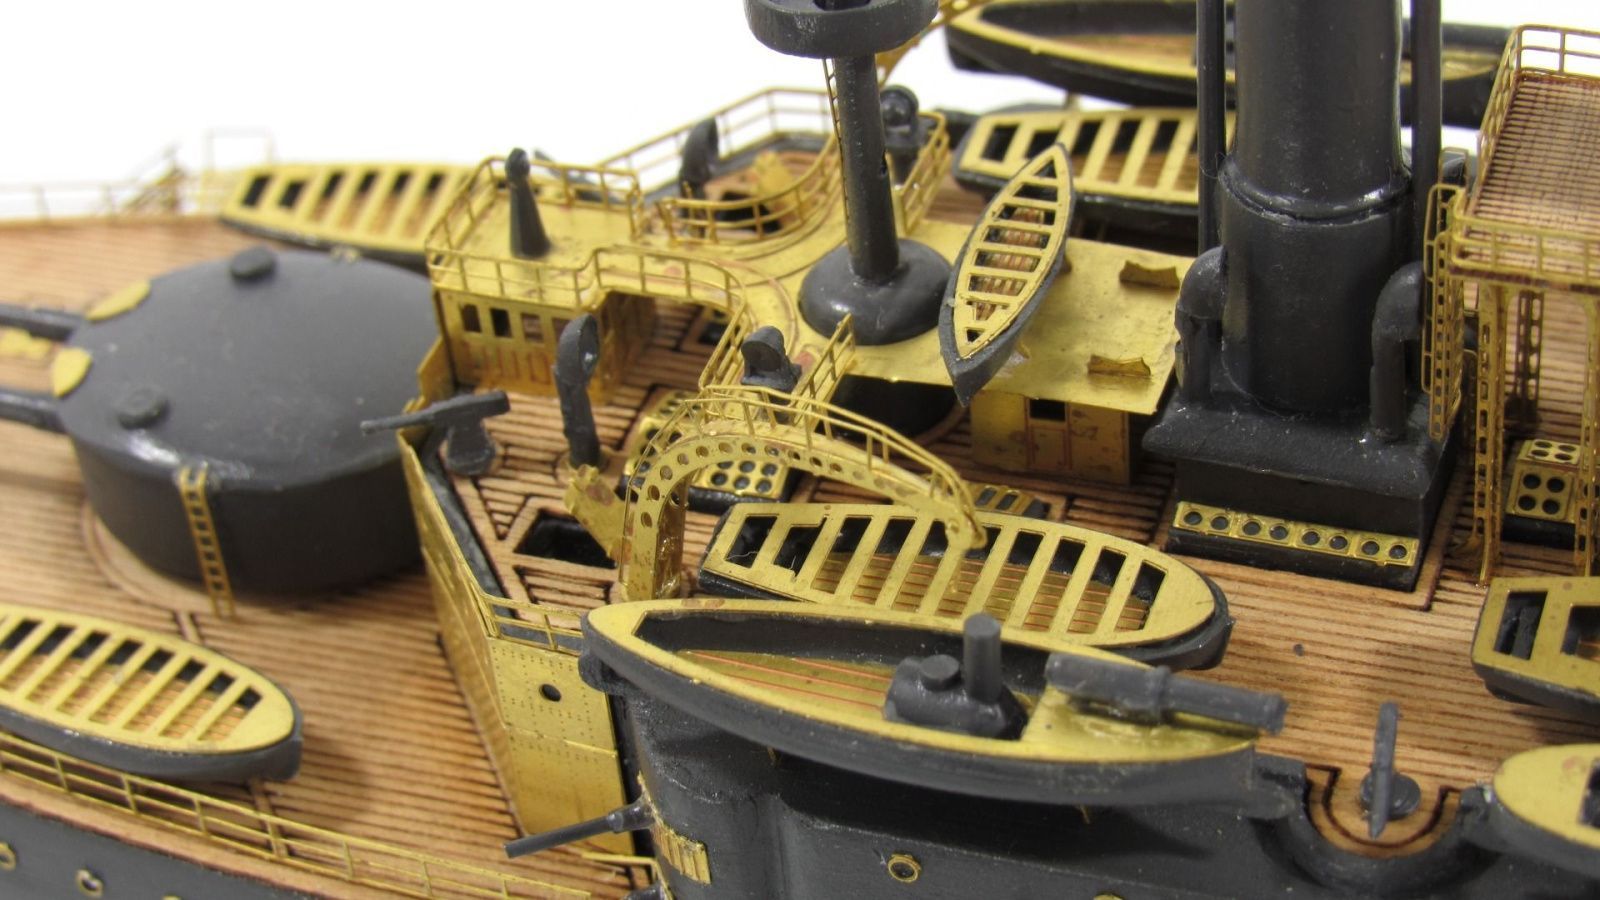 The deck of the battleship "Potemkin", "Panteleimon" - imodeller.store